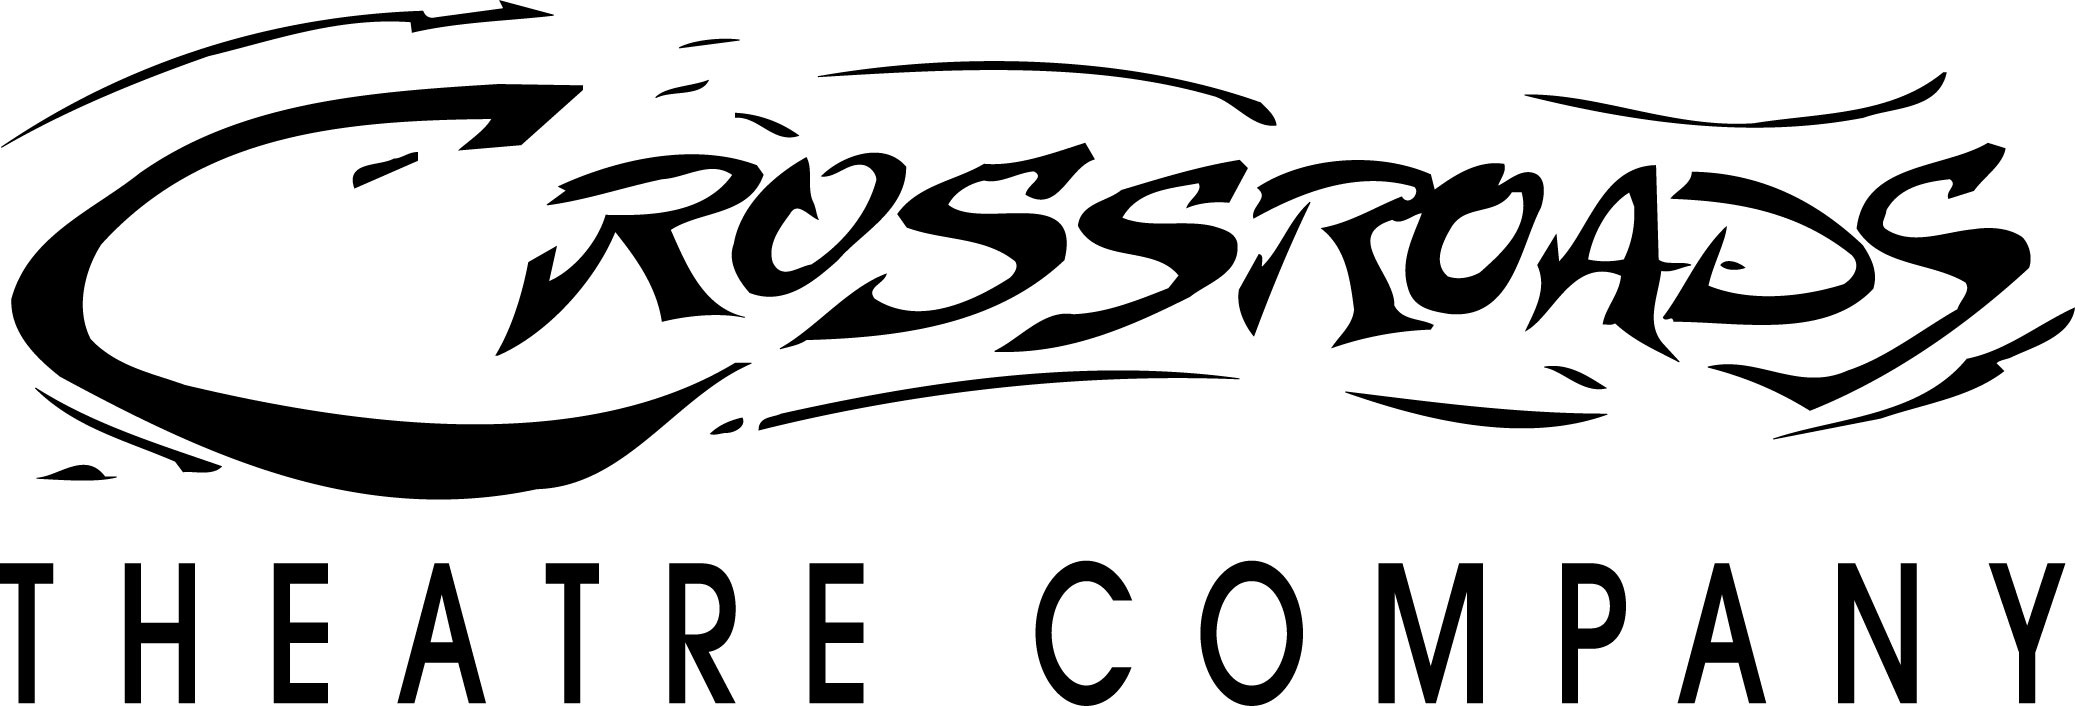 Crossroads Theatre Company Logo